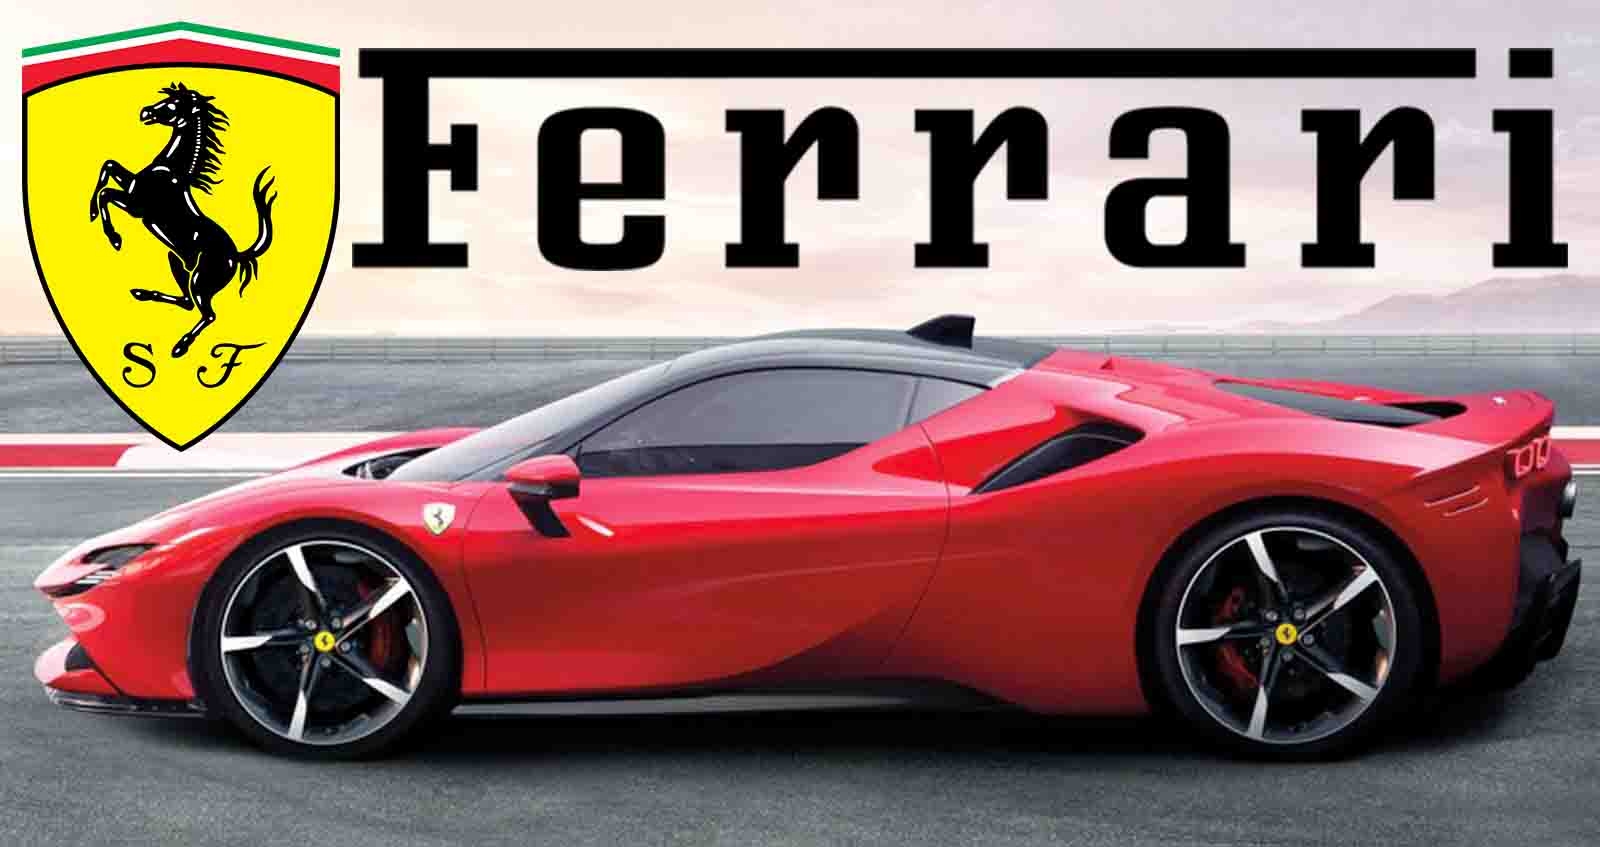 Ferrari จะไม่ทำรถยนต์ขับขี่อัตโนมัติ